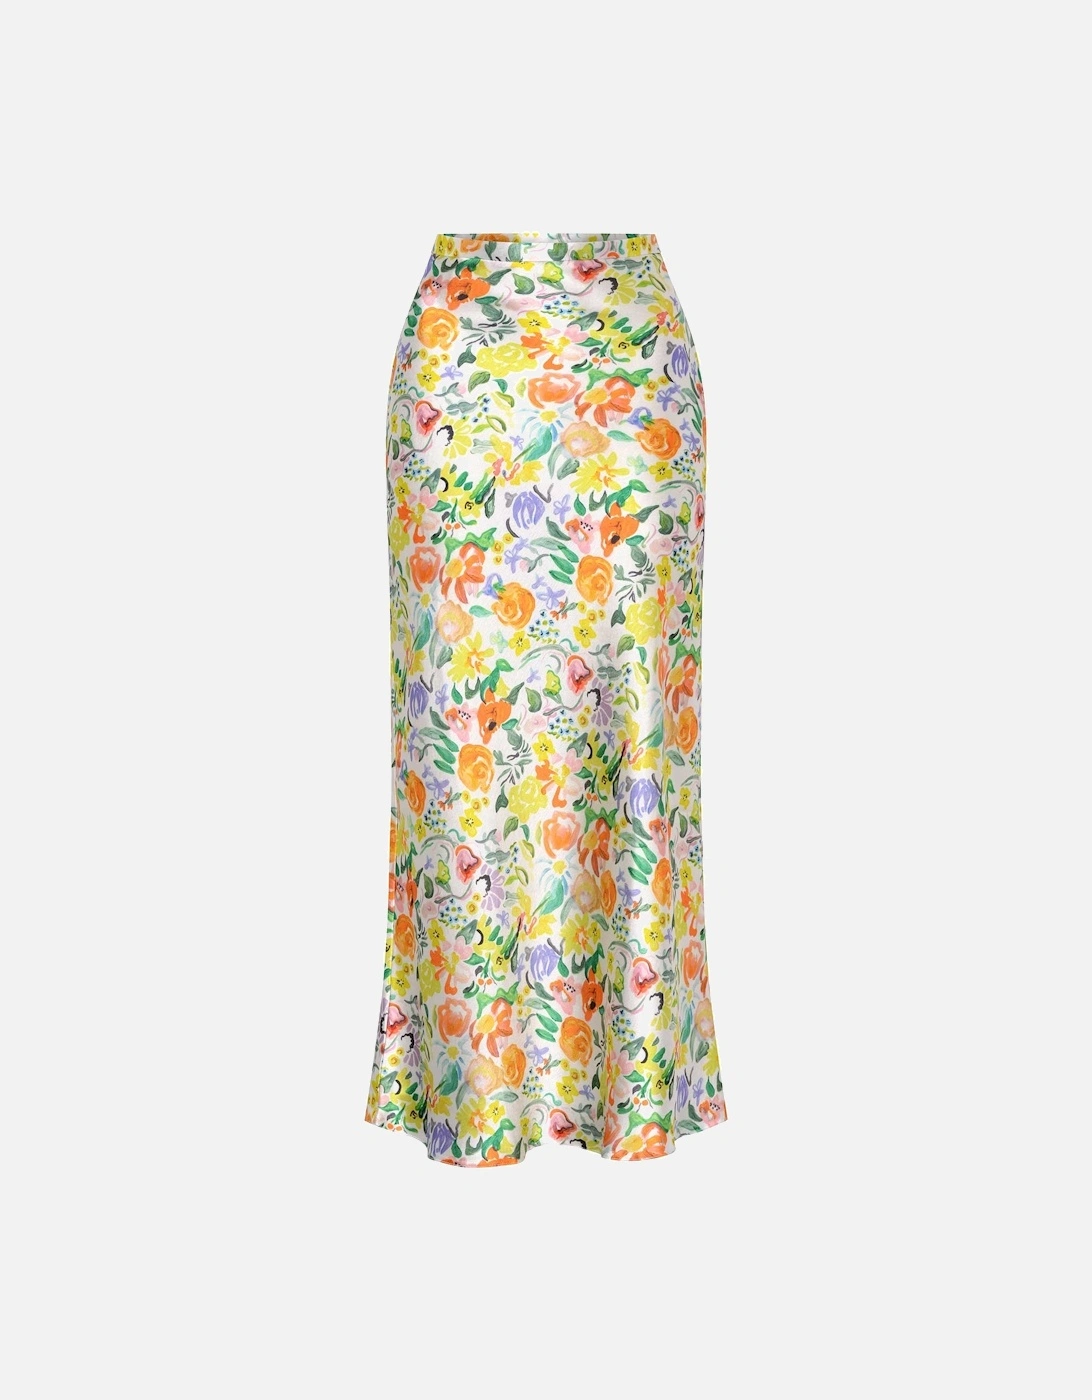 Saffron Skirt in Bouquet Floral Print